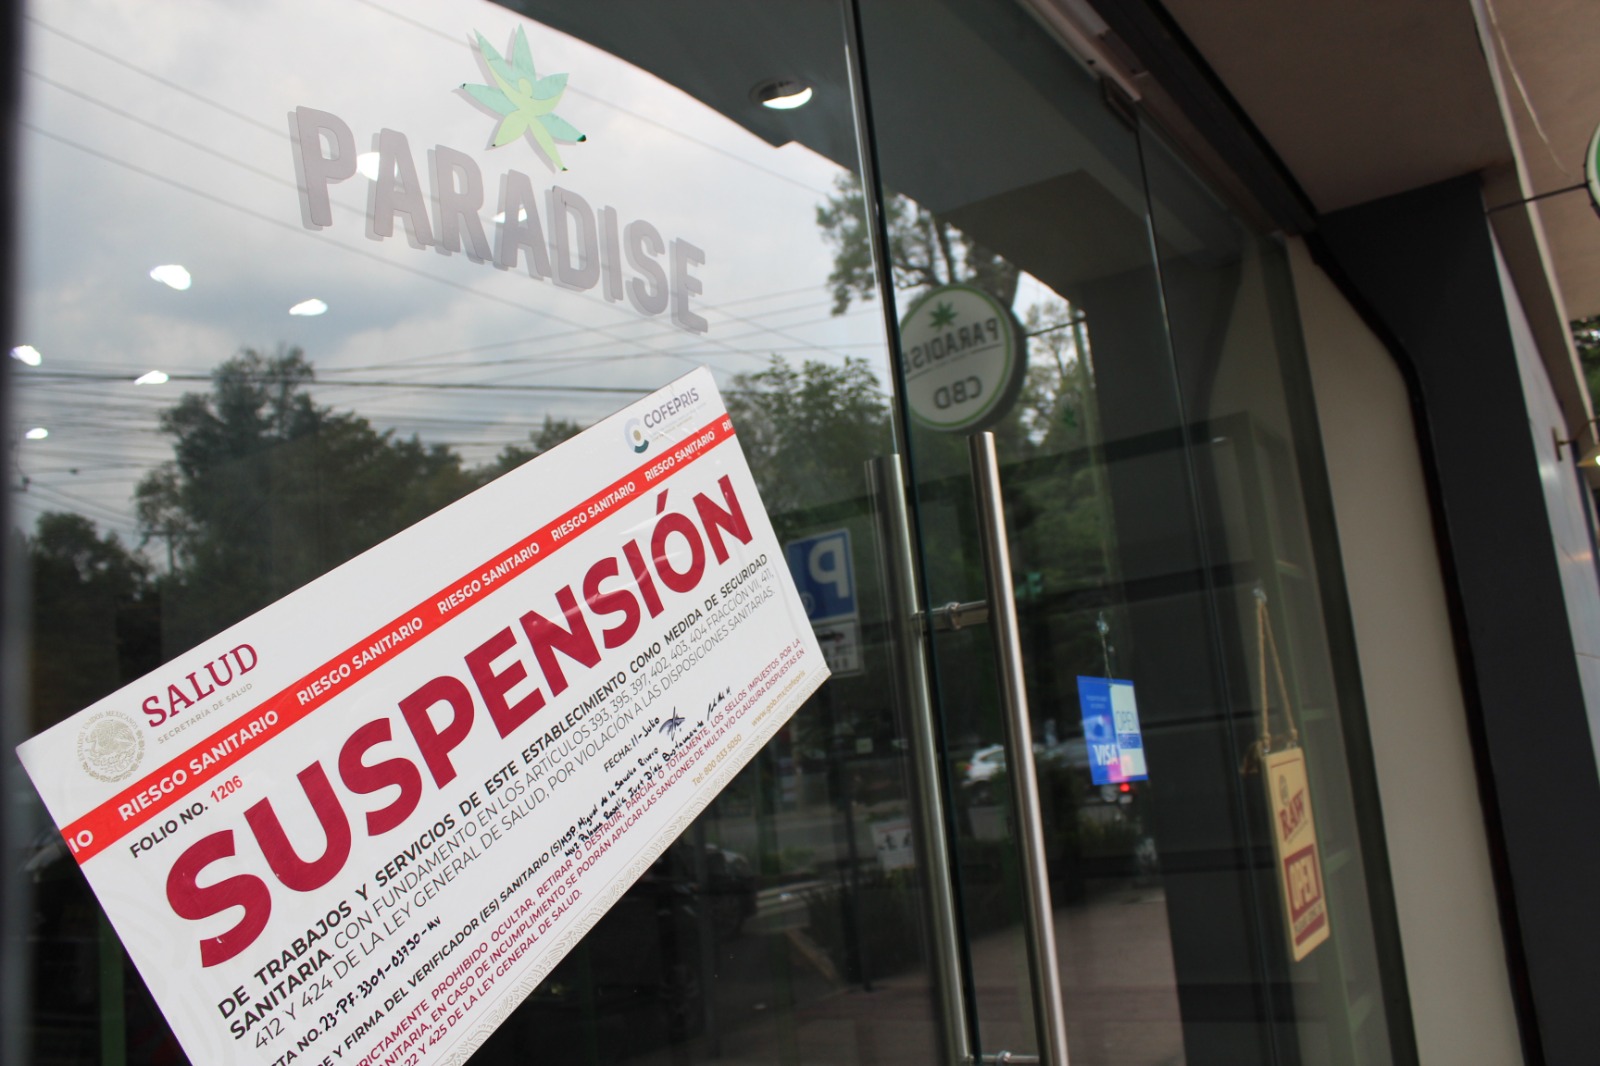 "Paradise", la tienda de cannabis de la que es socio Vicente Fox y fue clausurada